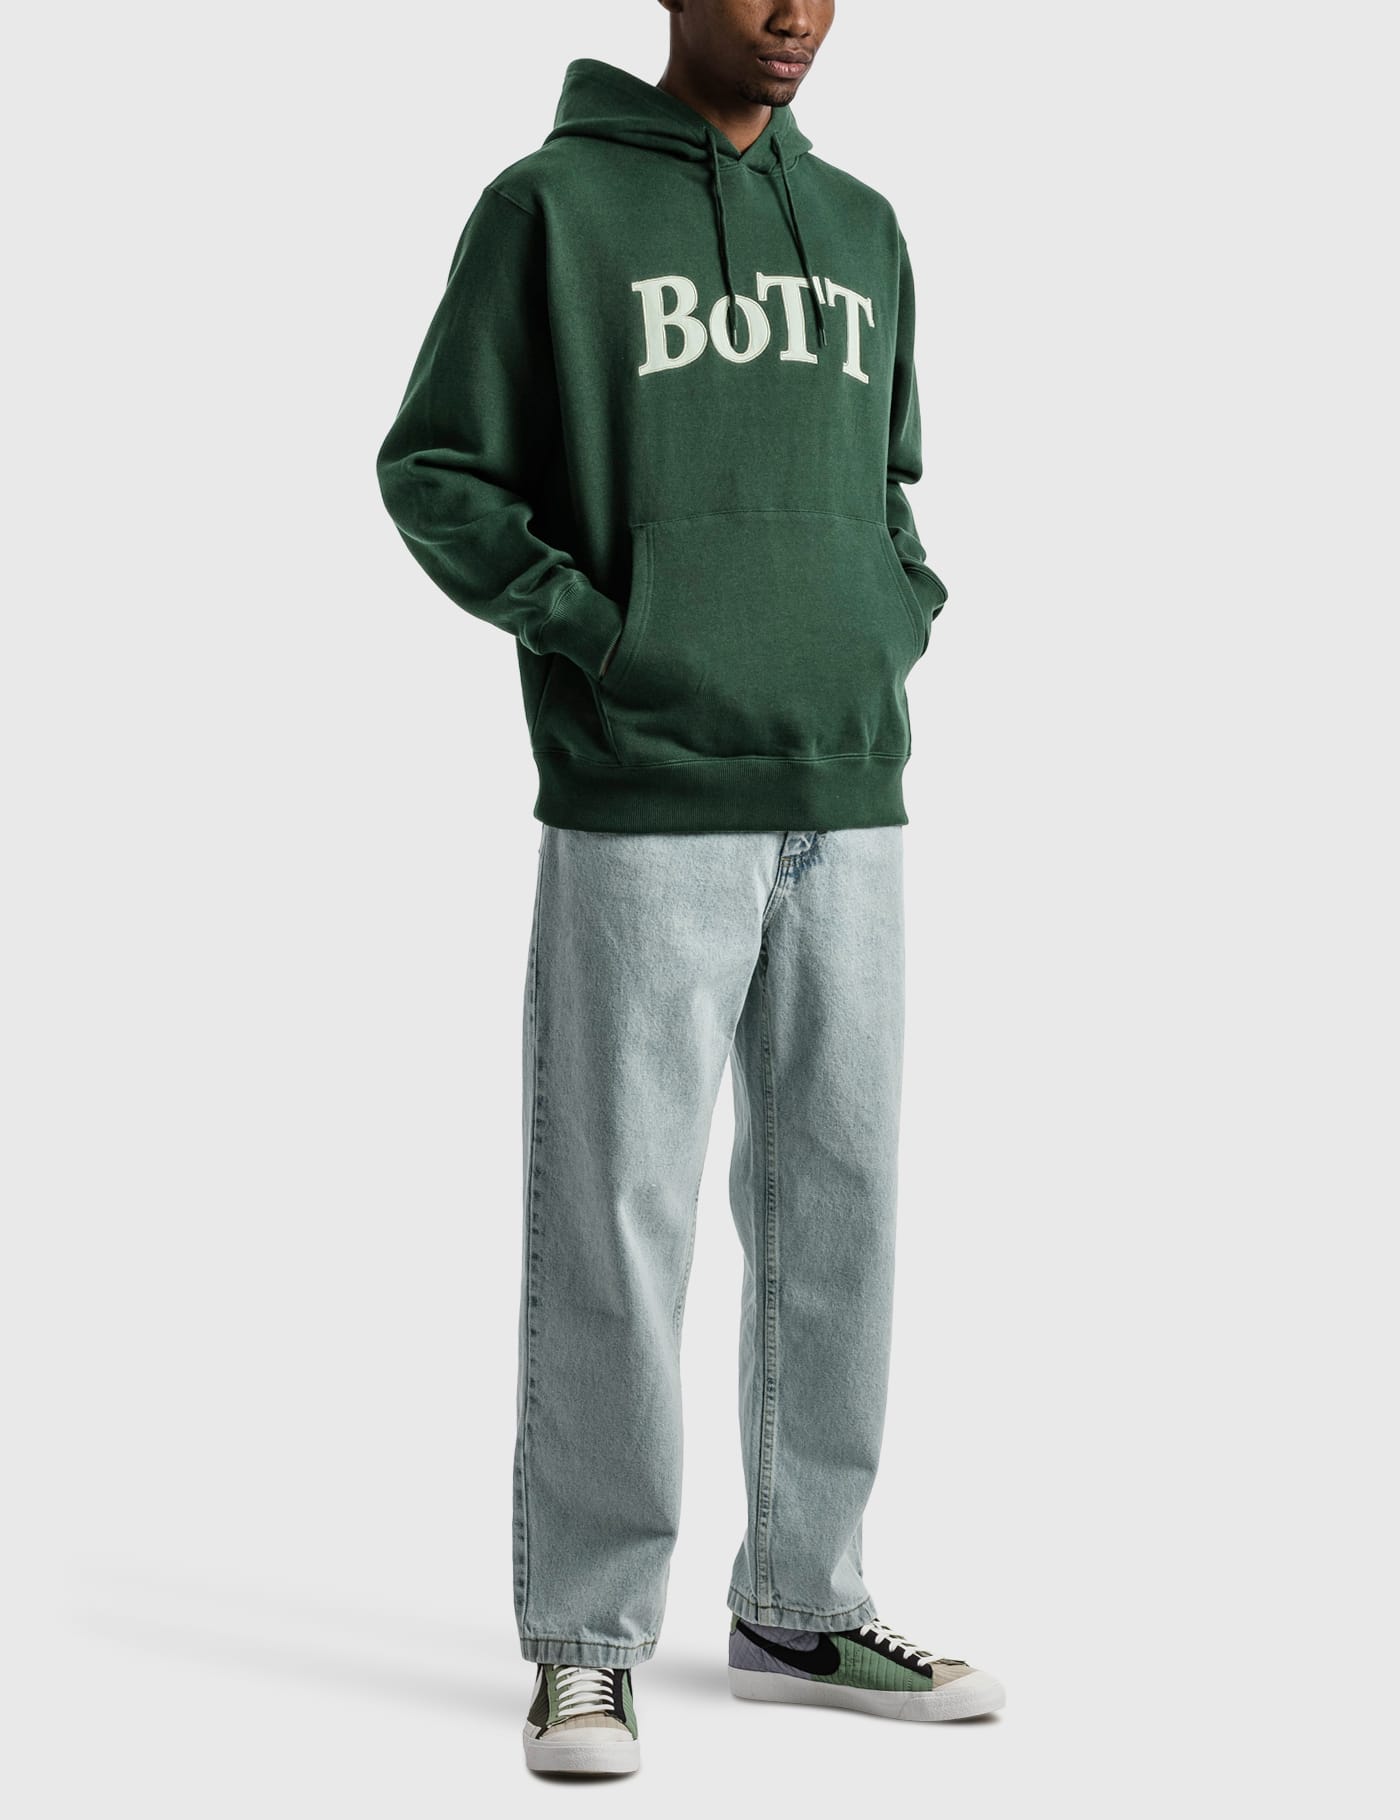 BoTT - OG ロゴ パーカー | HBX - ハイプビースト(Hypebeast)が厳選 